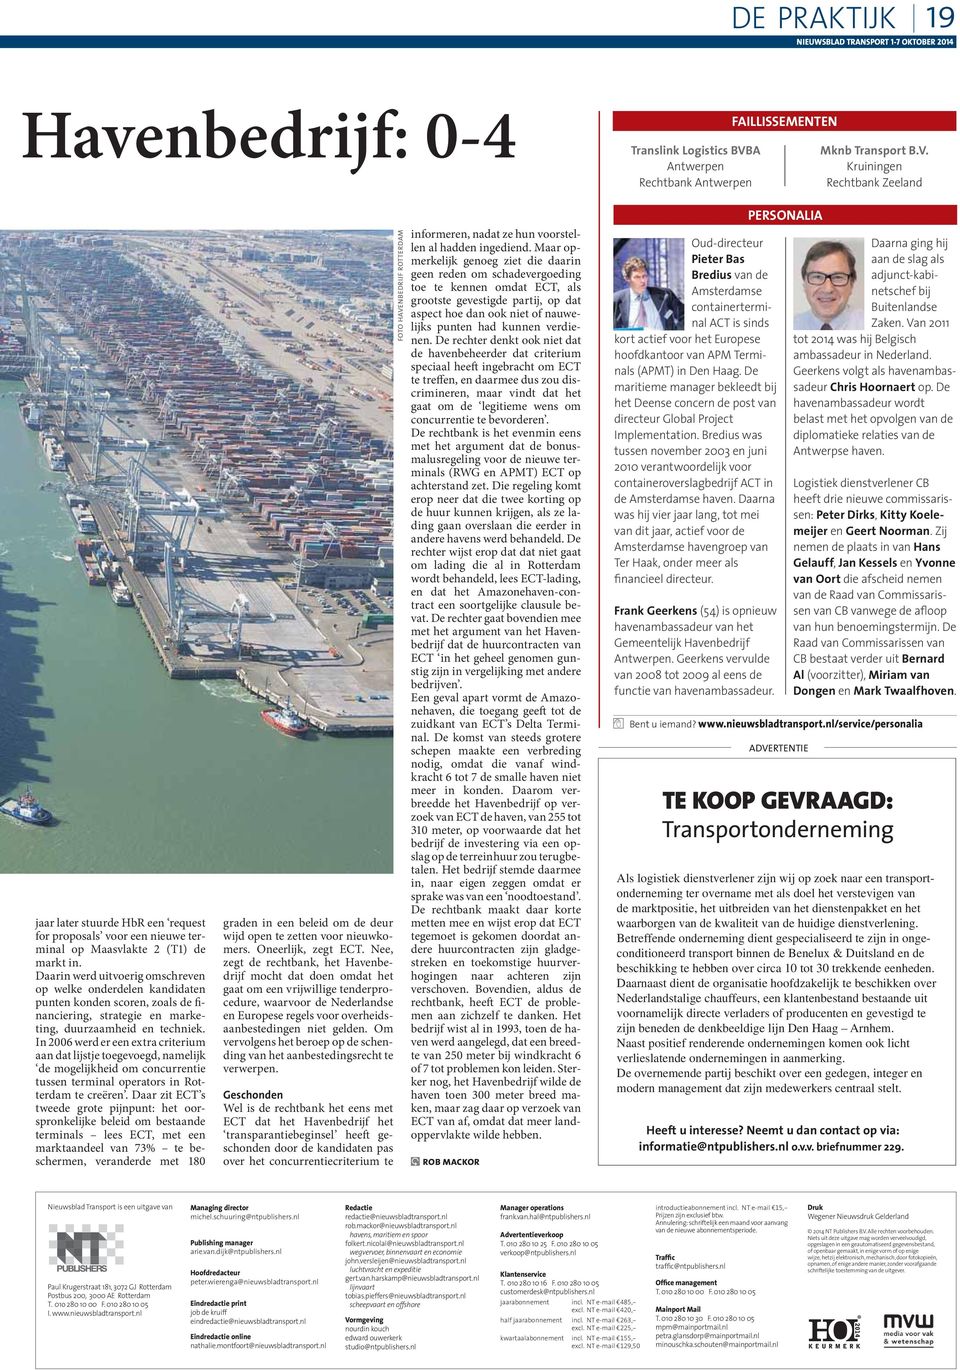 In 2006 werd er een extra criterium aan dat lijstje toegevoegd, namelijk de mogelijkheid om concurrentie tussen terminal operators in Rotterdam te creëren.